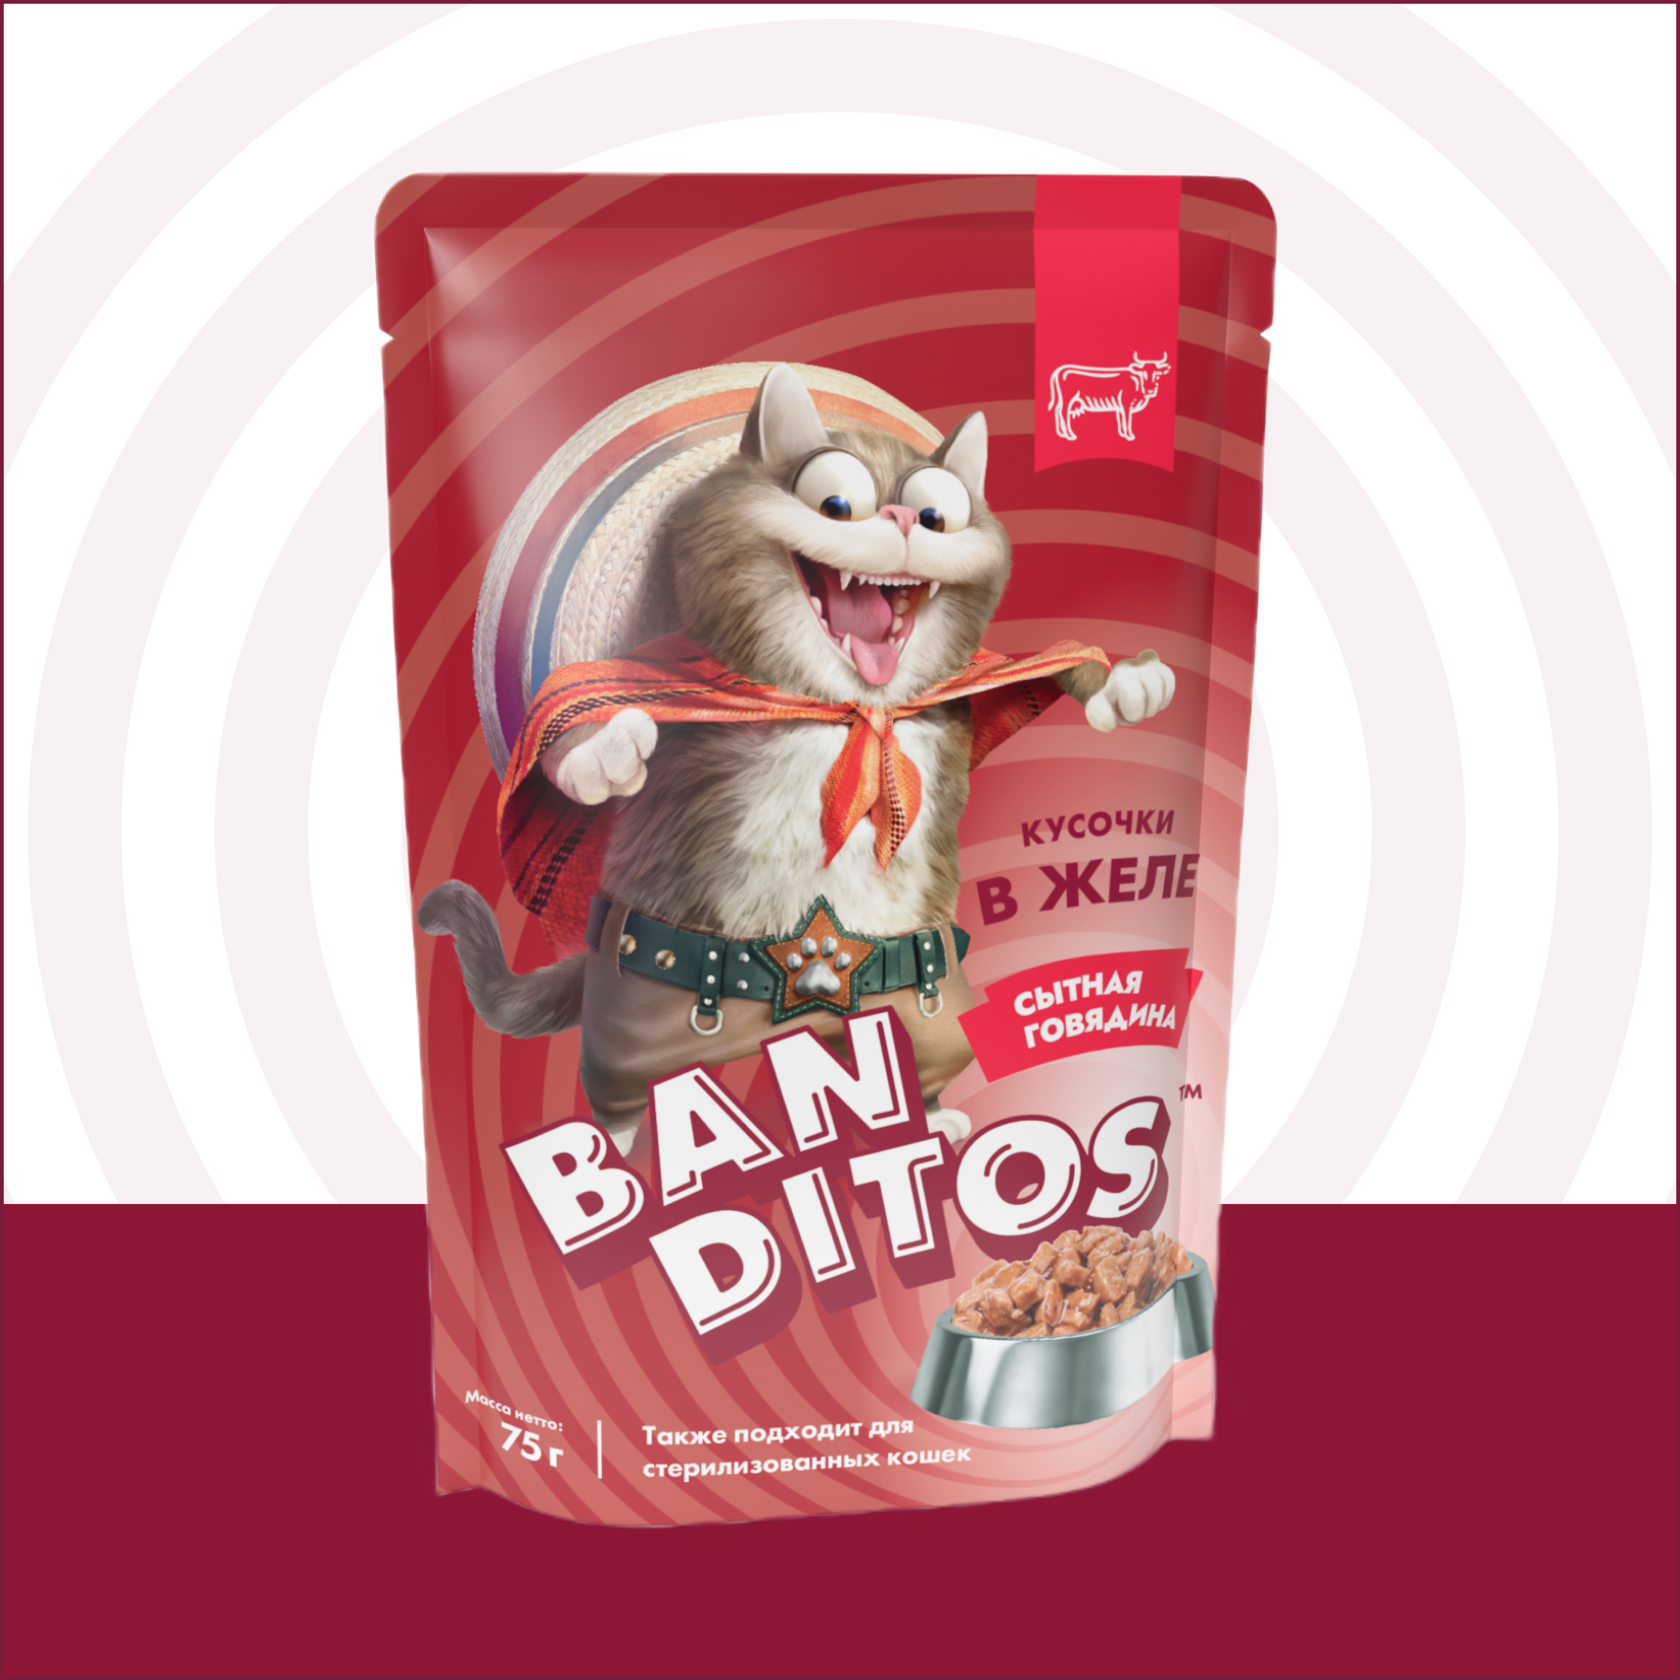 Banditos Влажный корм для кошек Сытная говядина 12 шт*75 гр